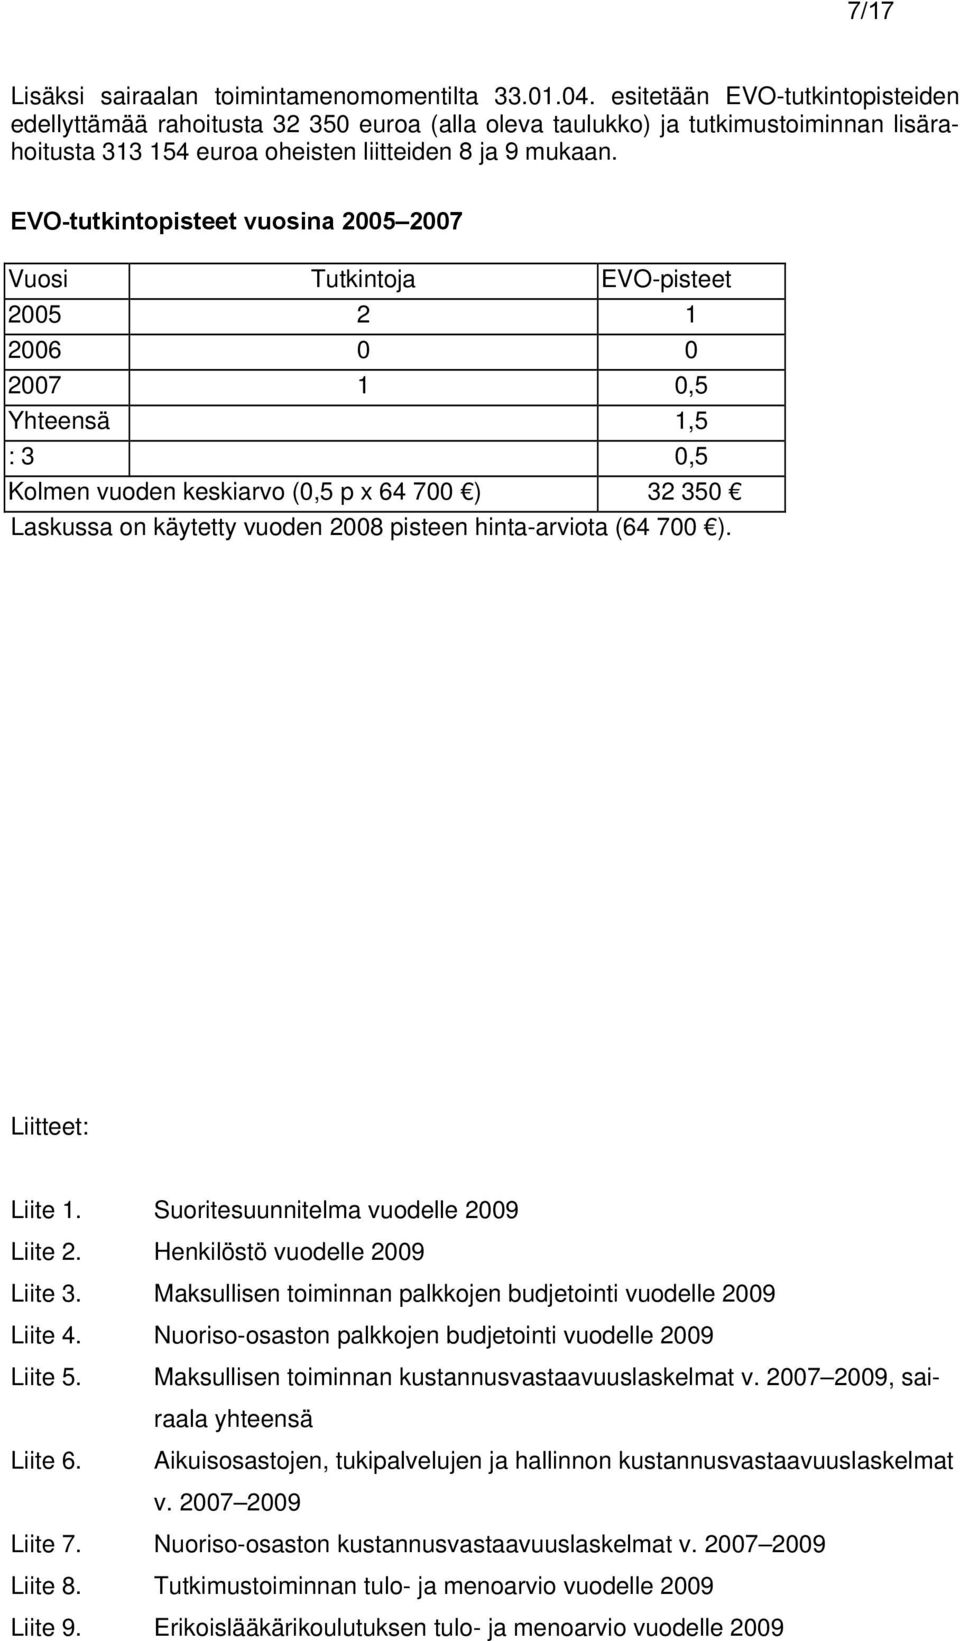 EVO-tutkintopisteet vuosina 2005 2007 Vuosi Tutkintoja EVO-pisteet 2005 2 1 2006 0 0 2007 1 0,5 Yhteensä 1,5 : 3 0,5 Kolmen vuoden keskiarvo (0,5 p x 64 700 ) 32 350 Laskussa on käytetty vuoden 2008